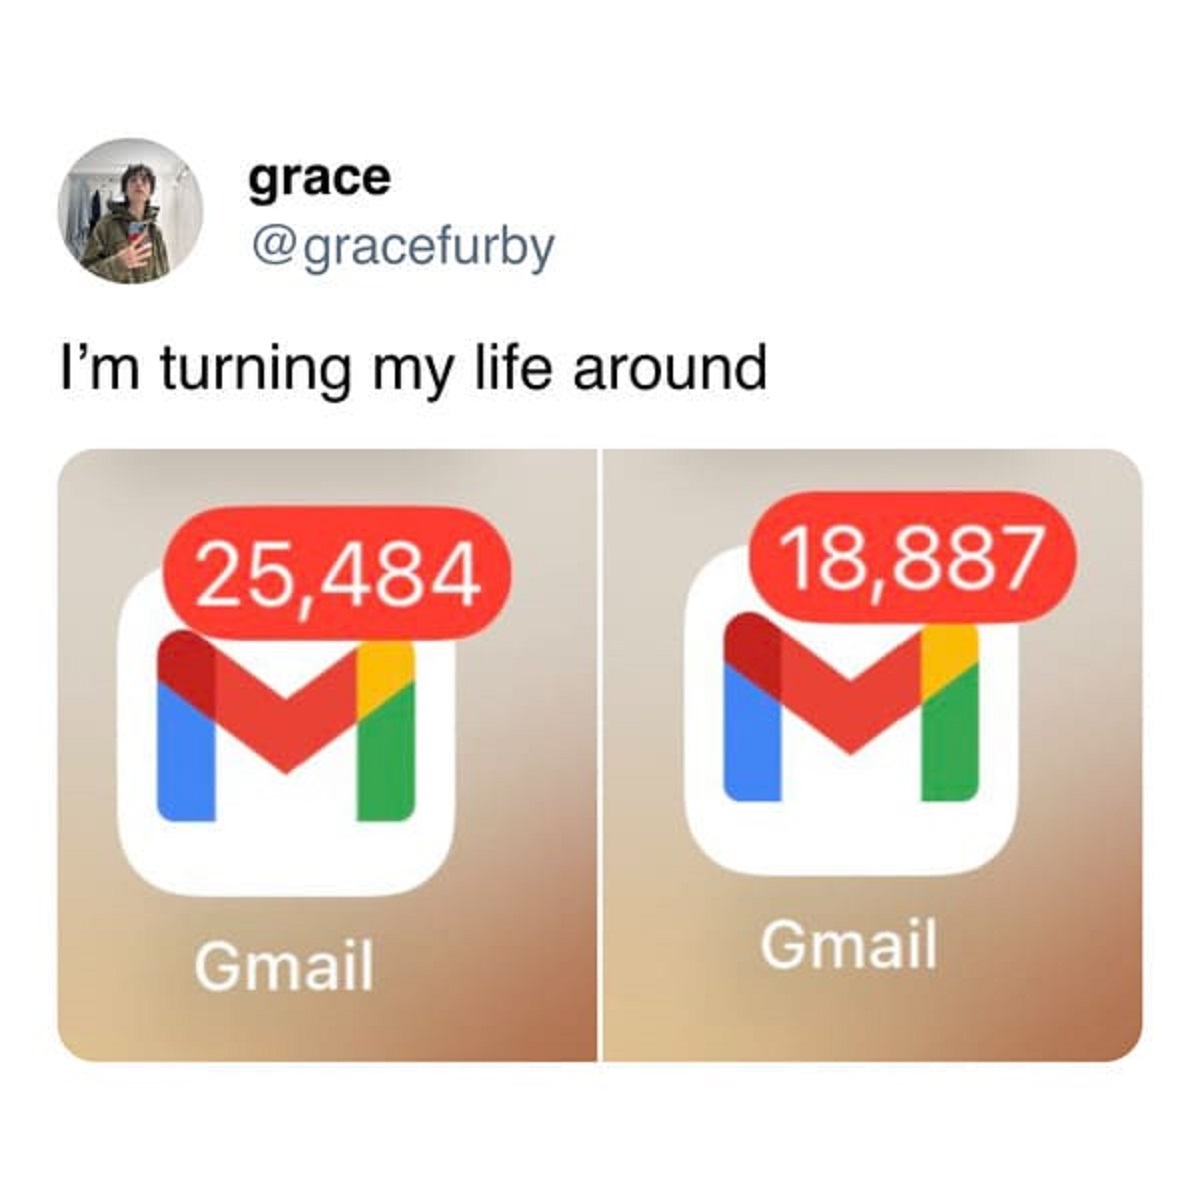 graphic design - grace I'm turning my life around 25,484 Mi 18,887 Gmail Gmail